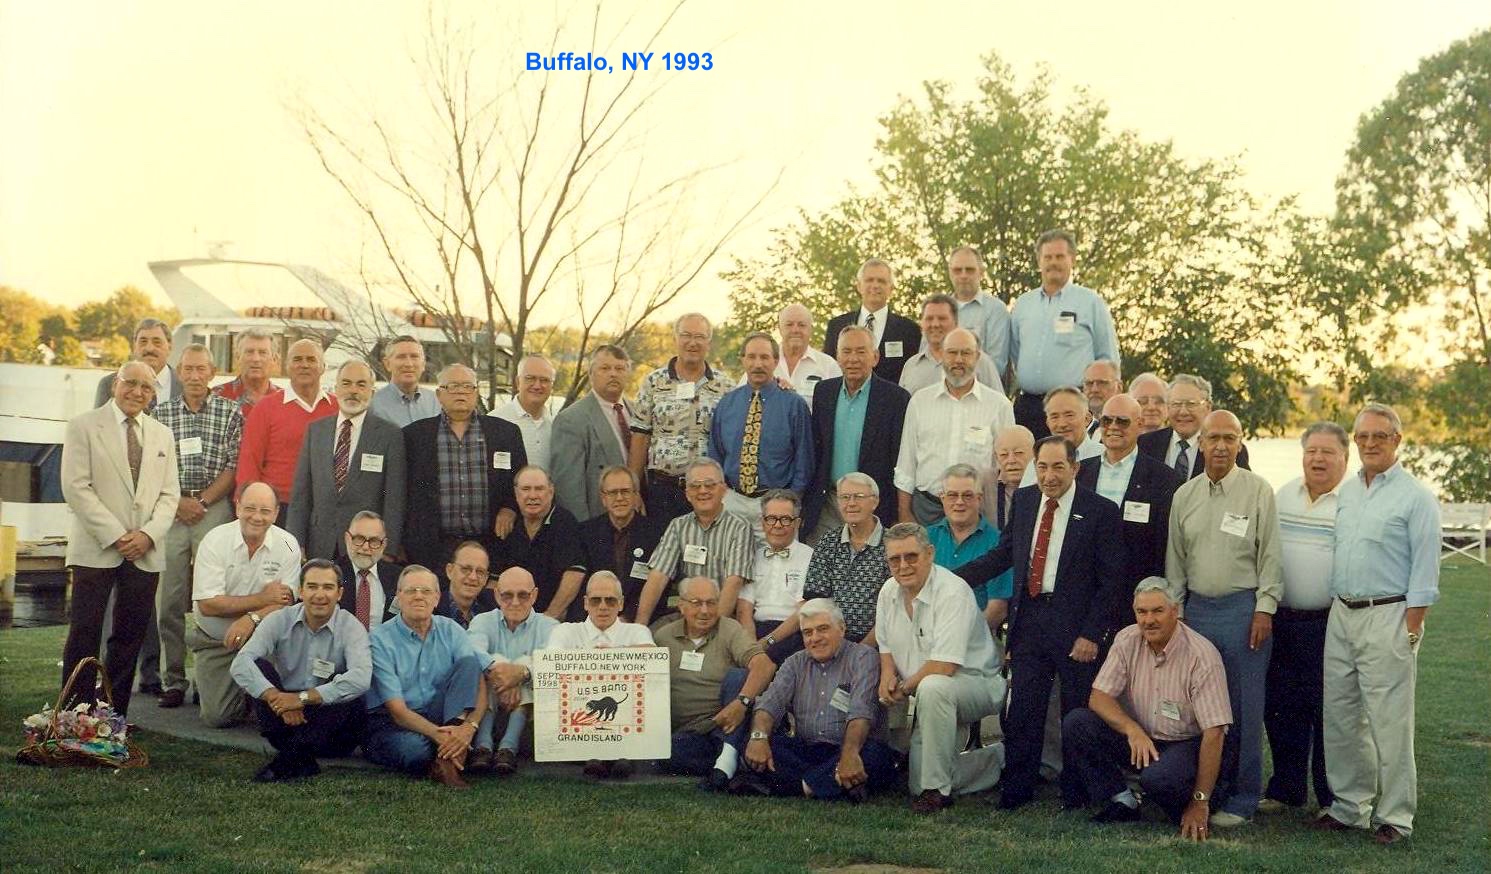 USS Bang 1993 reunion in Buffalo, NY